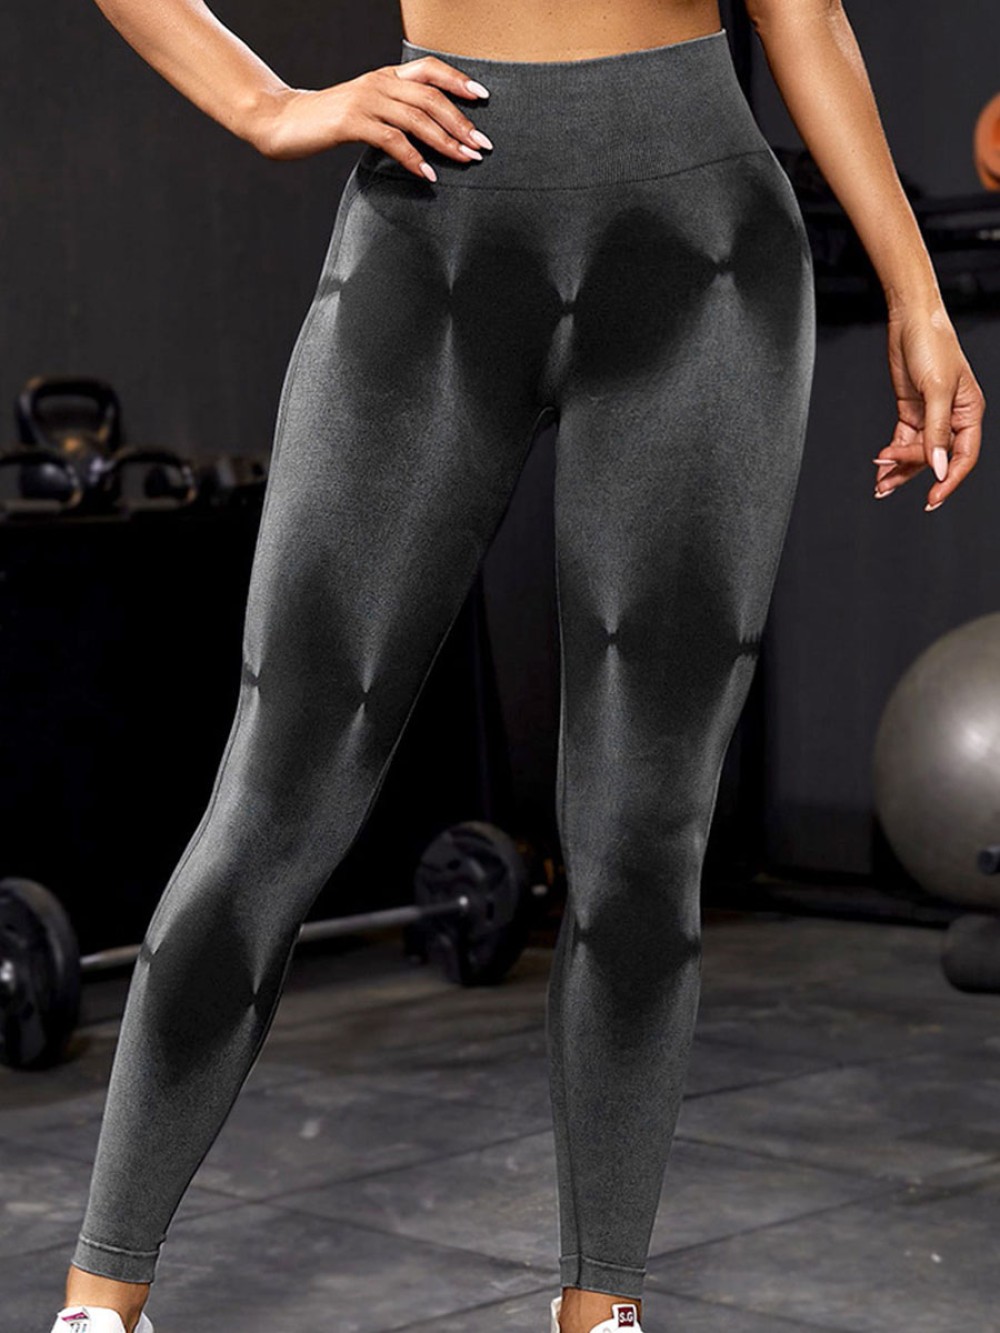 Black Sport Wear Yoga Leggings For Women